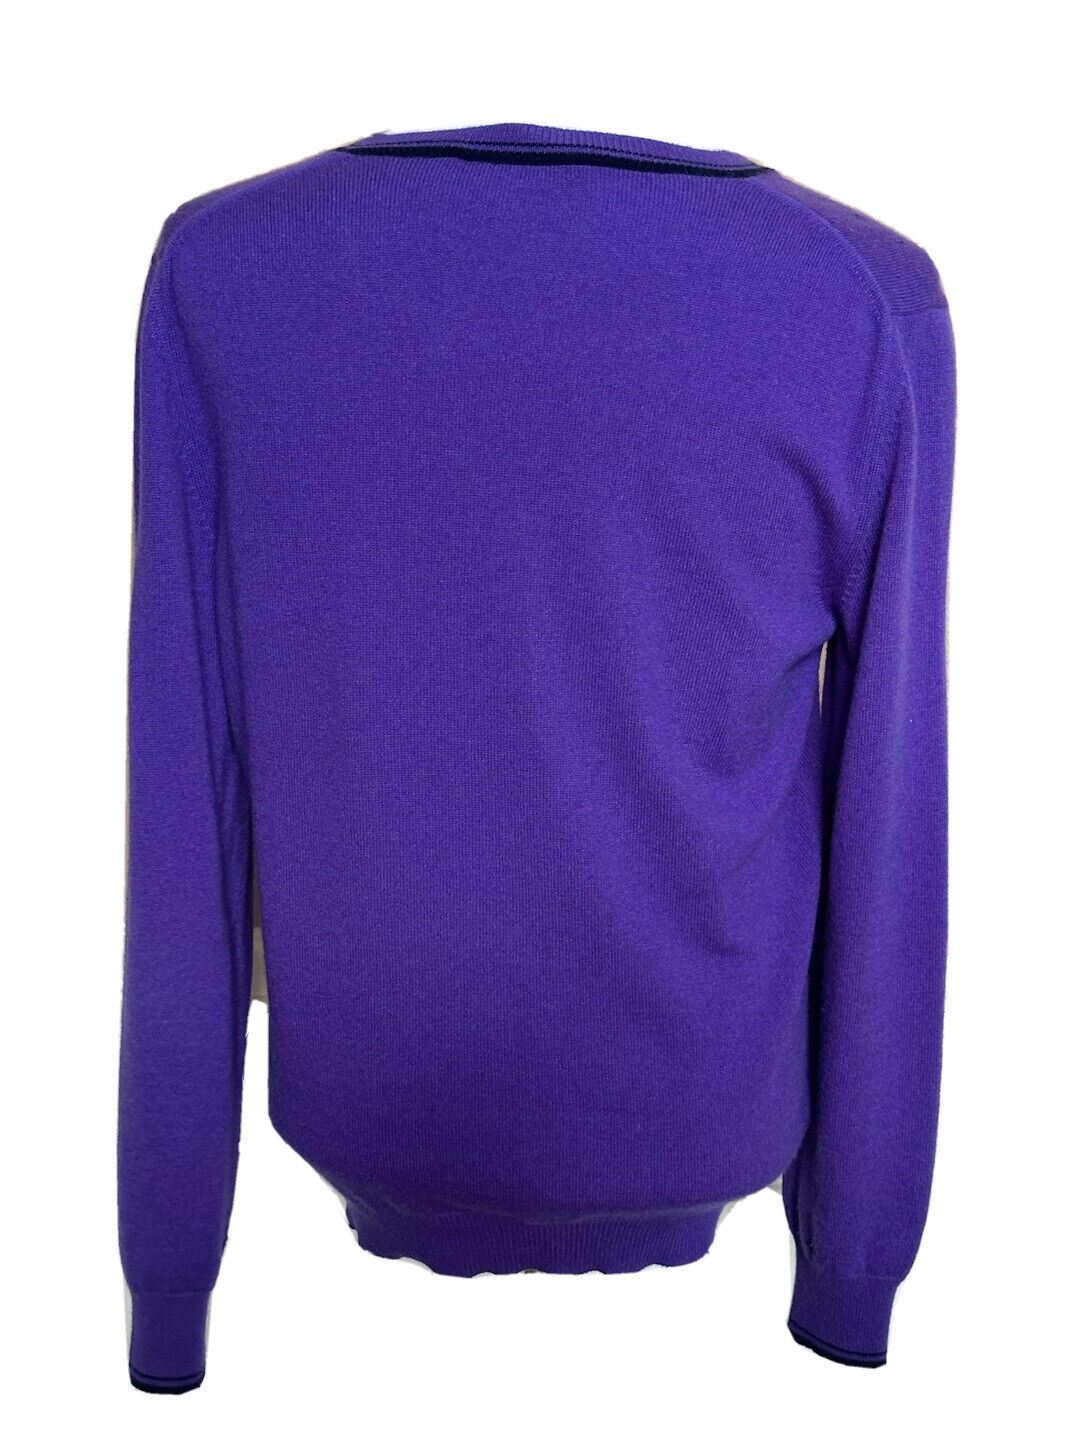 ETRO Мужской мягкий фиолетовый свитер с v-образным вырезом, средний размер